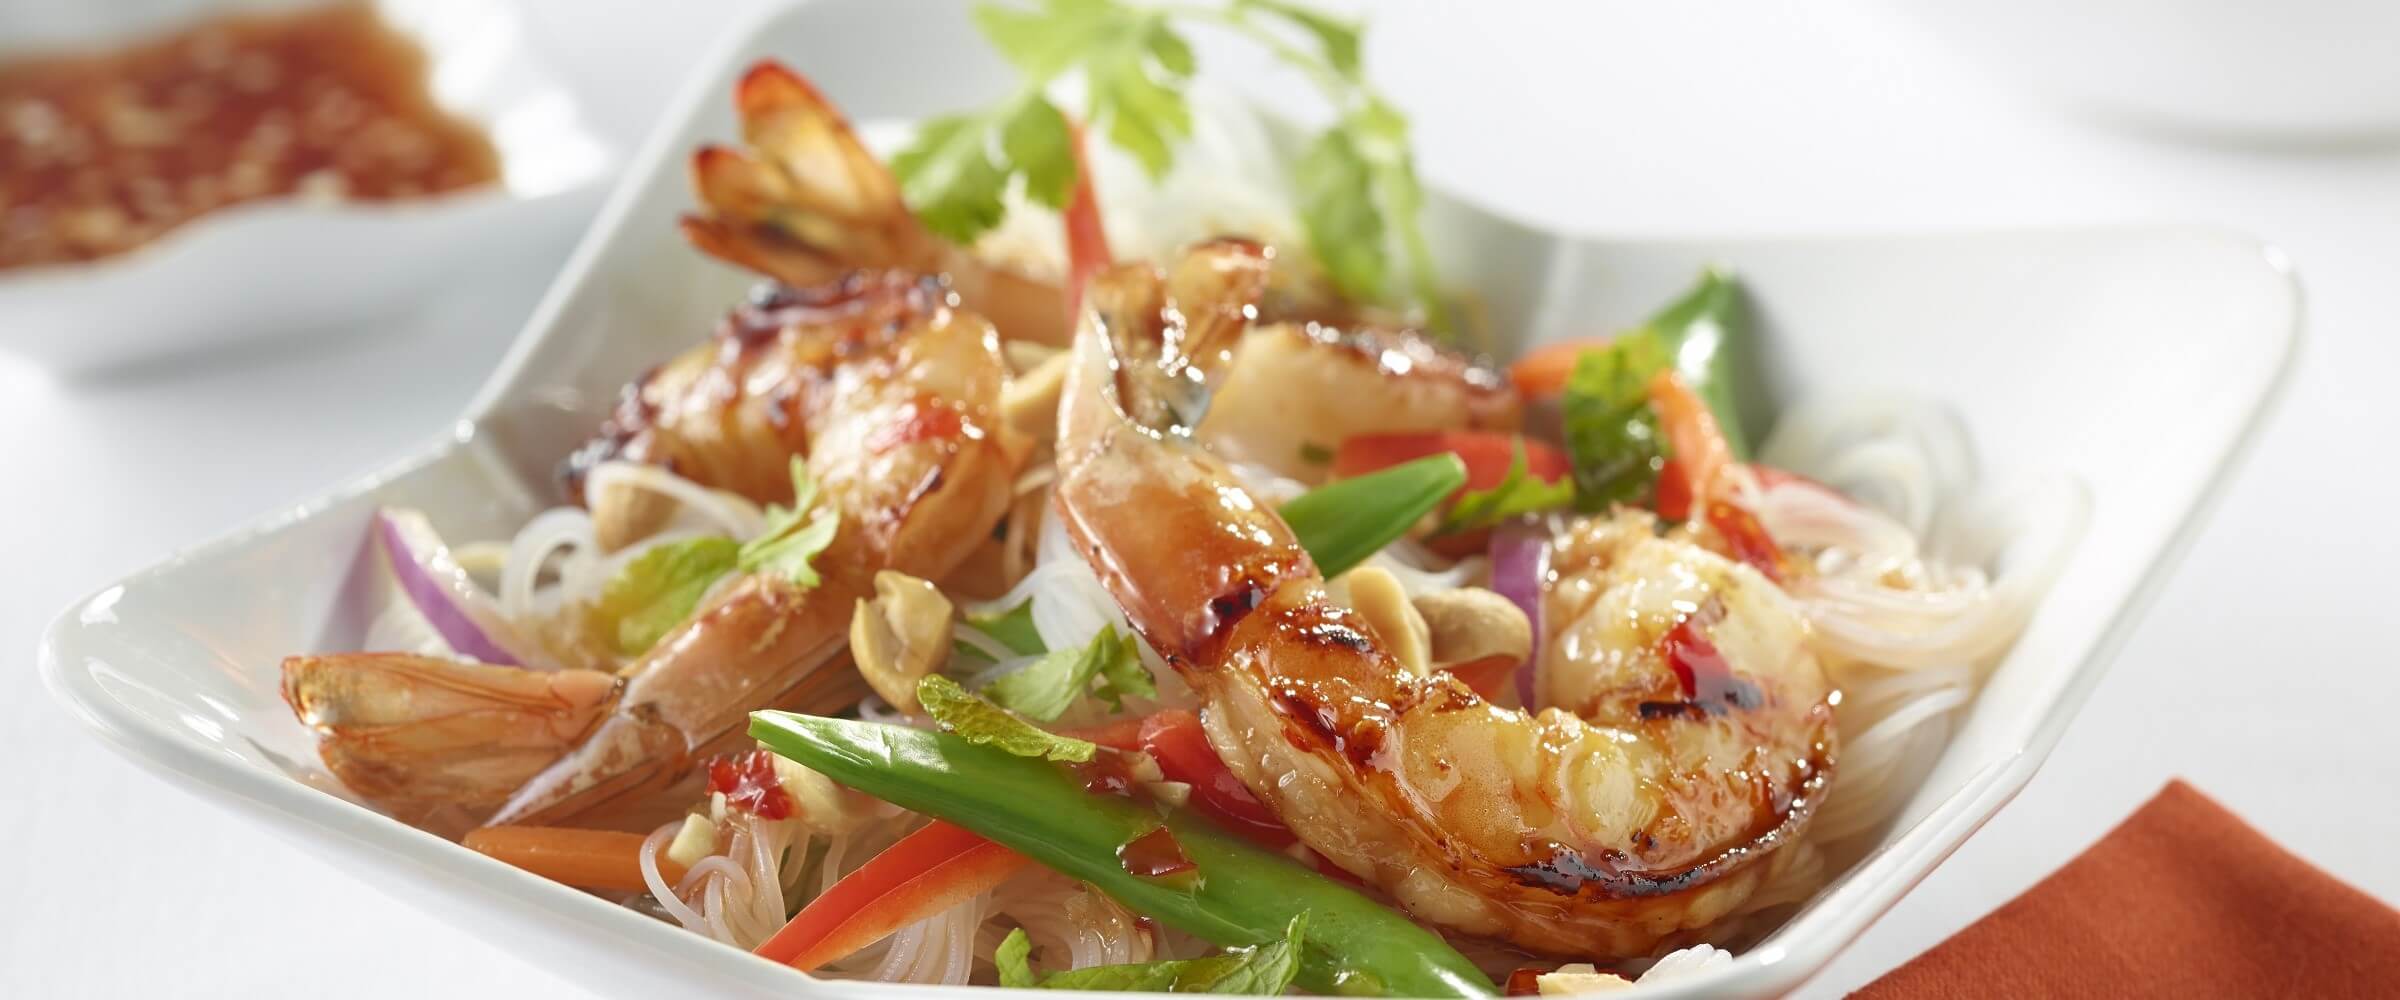 shrimp noodle salad in white bowl with garnish